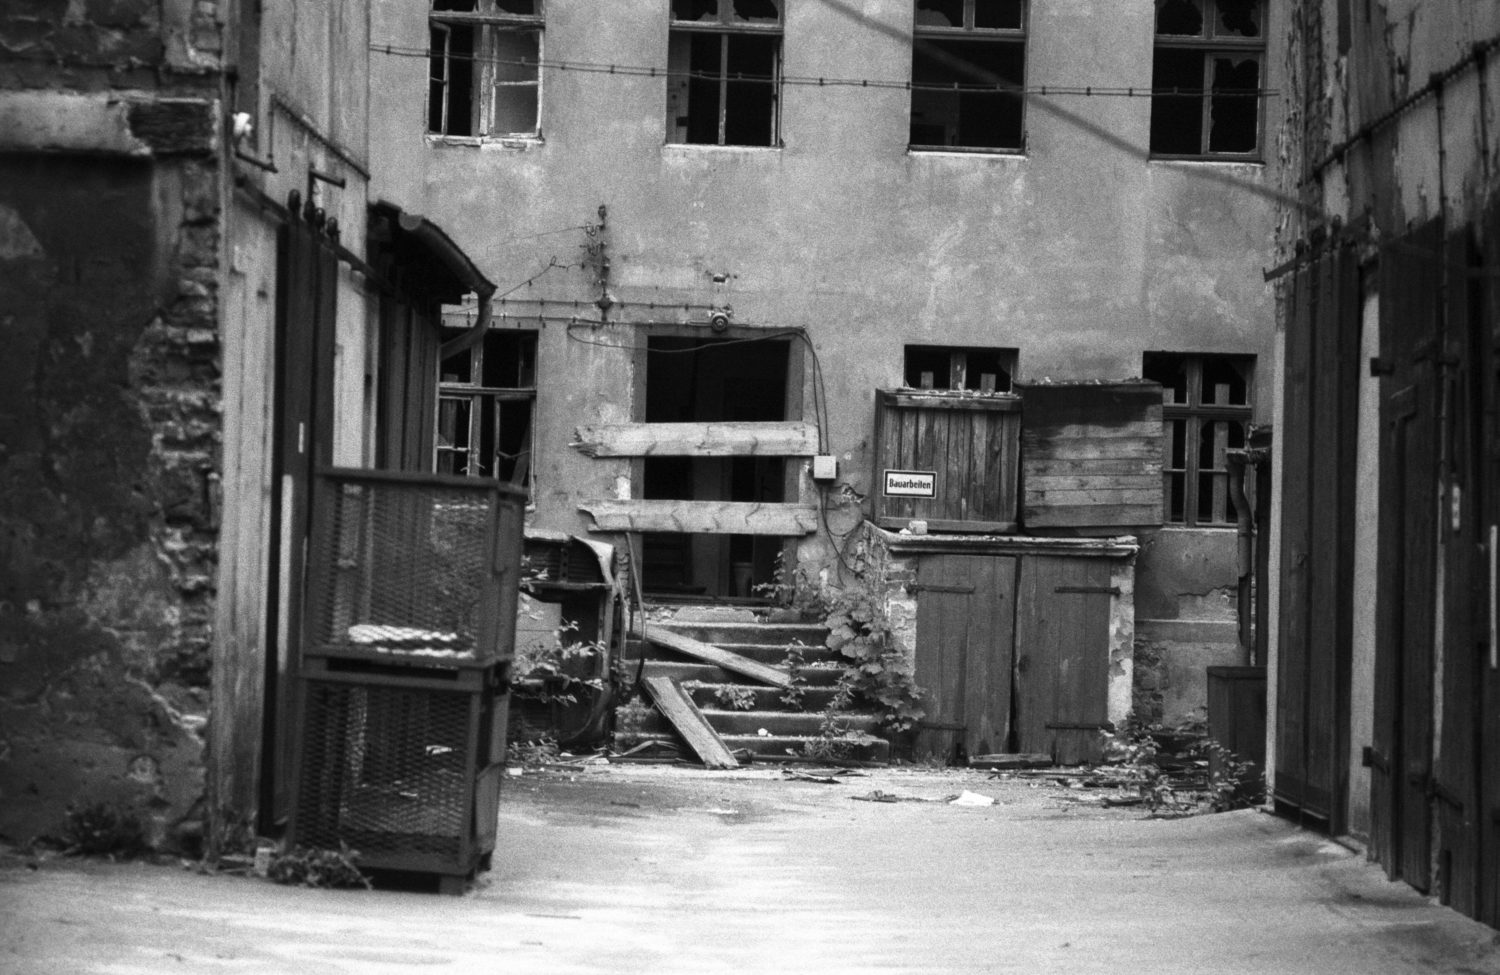 Einsamkeit in Berlin: Verfallener Hinterhof in der Wichertstraße in Prenzlauer Berg, 1989. Foto: Imago/Seeliger